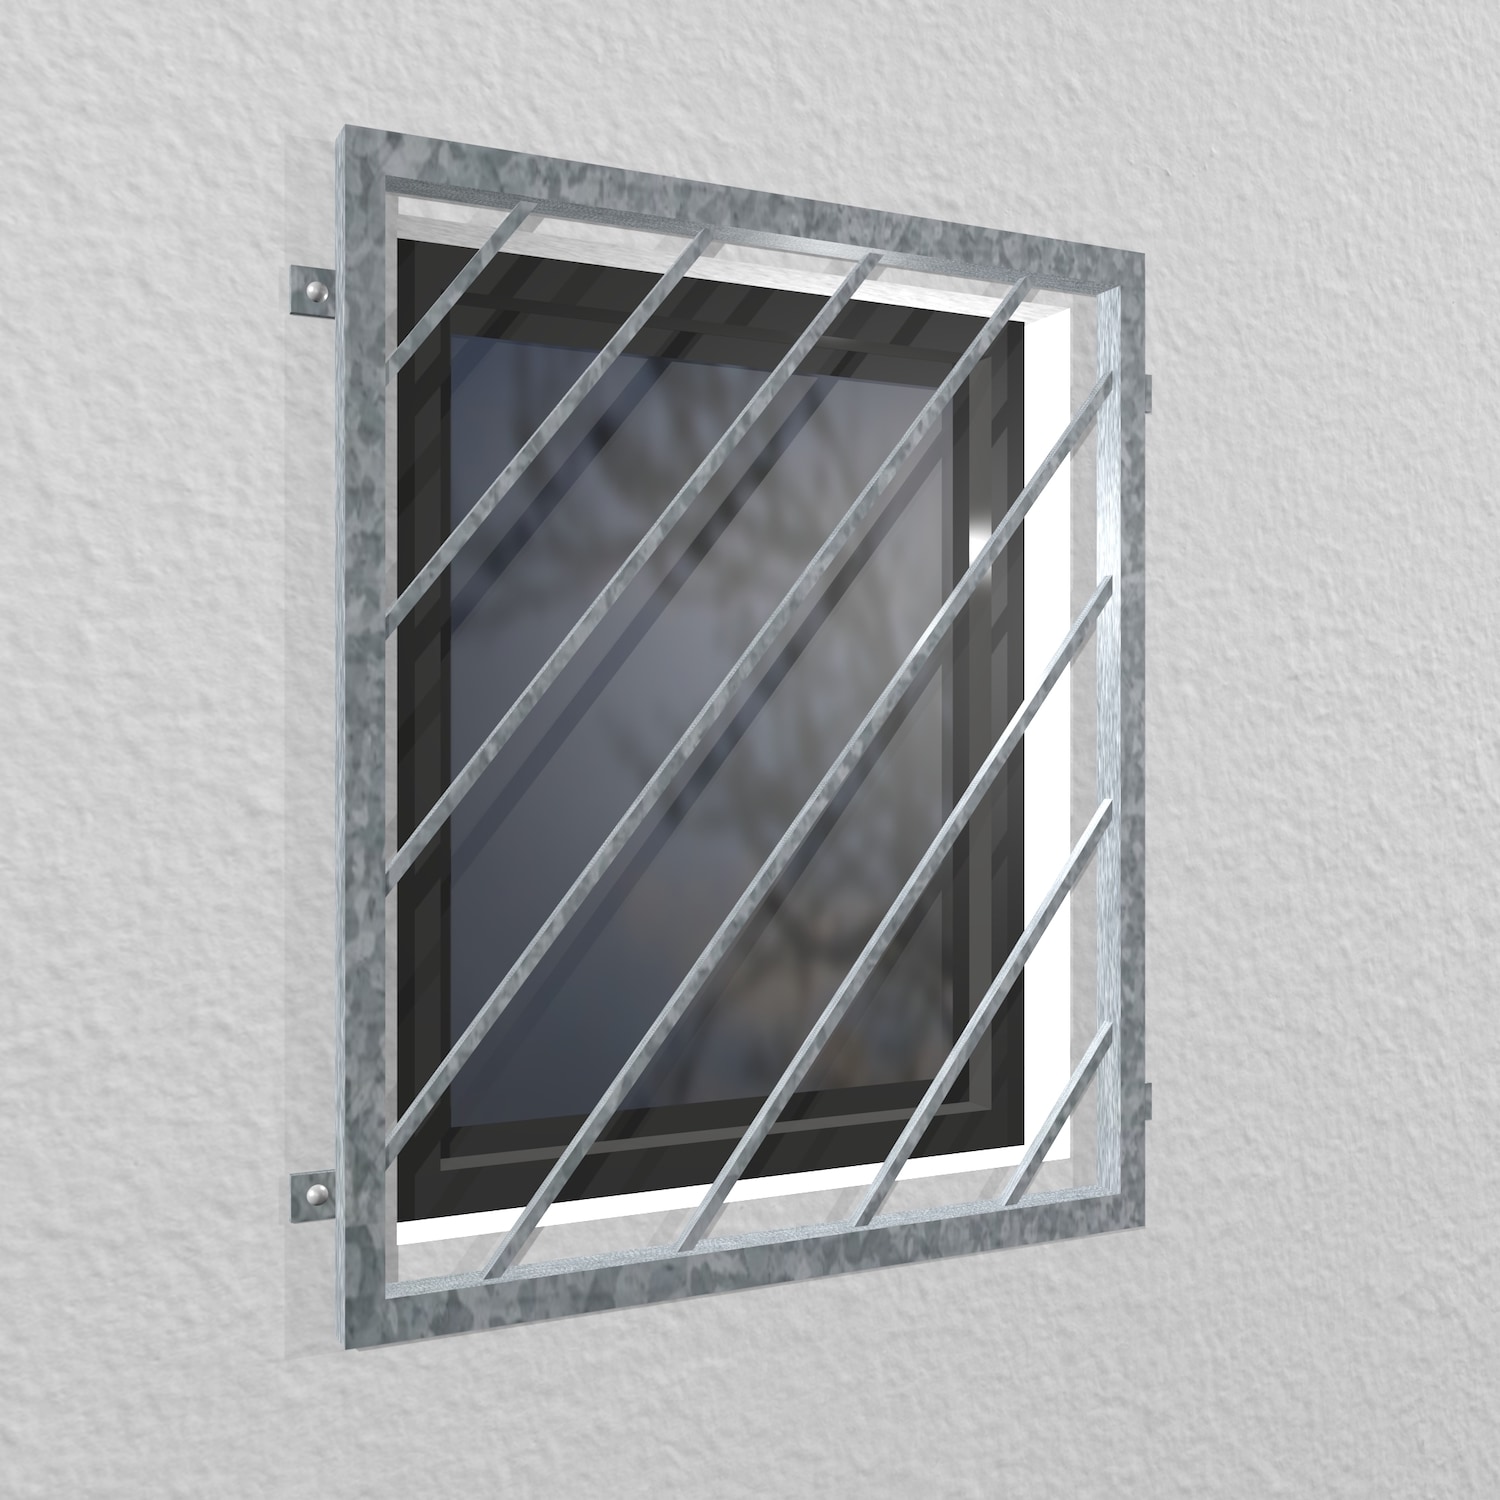 Grille de défense pour fenêtres en acier galvanisé Barre diagonale 1